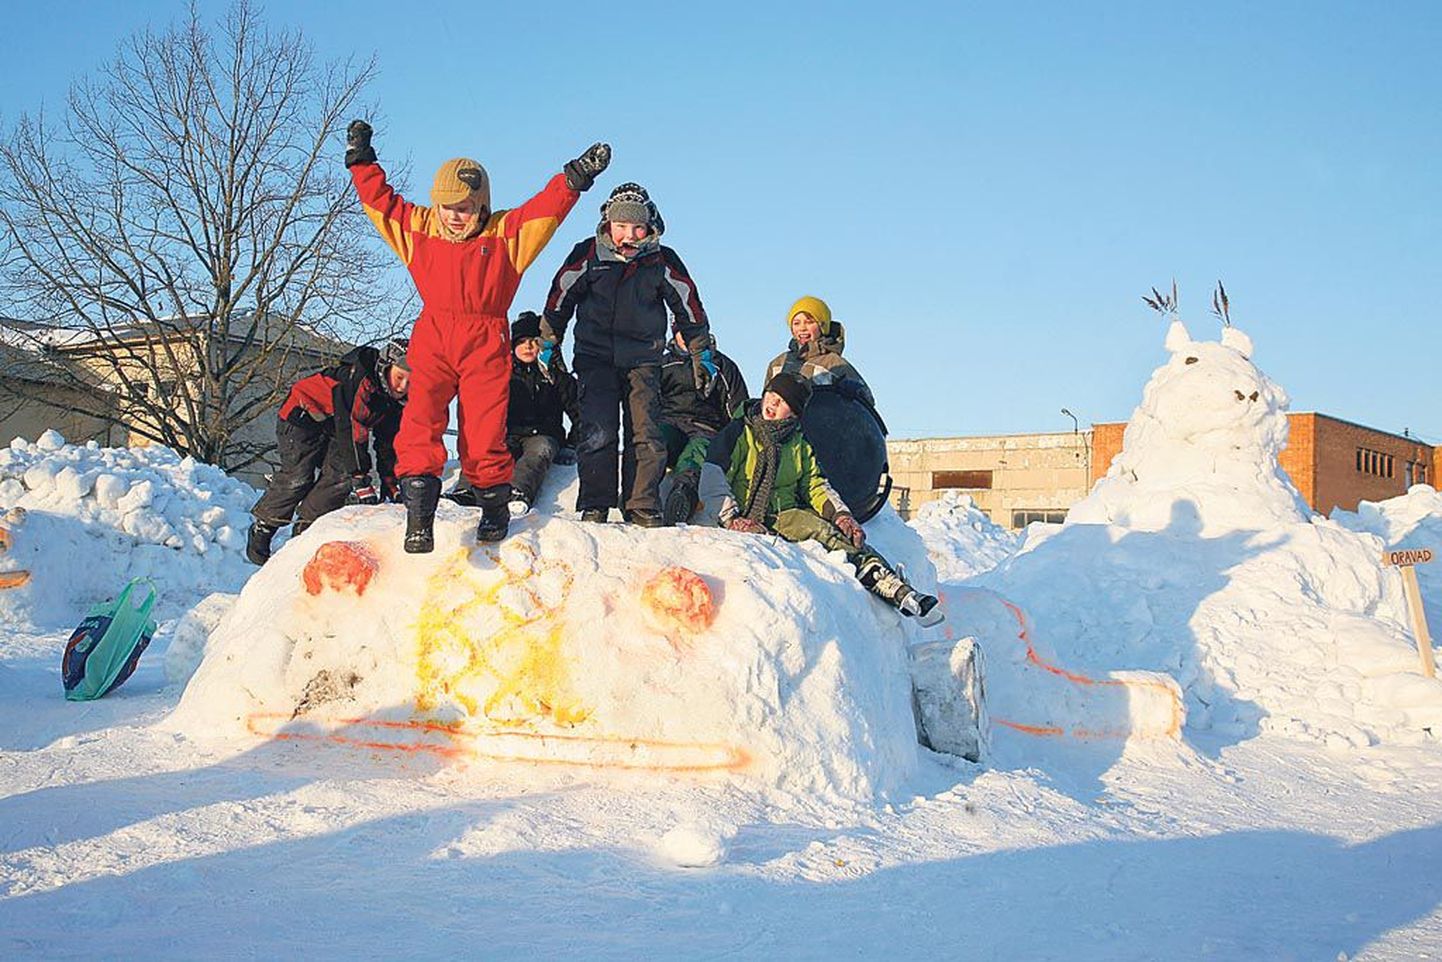 Sinti kerkinud lumelinna üle rõõmustasid kõige enam lapsed, kes ekspluateerisid pühapäeval linna nii kuidas andis. Mitu pildile jäänud poissi lõi isegi linna ehitusel kaasa.